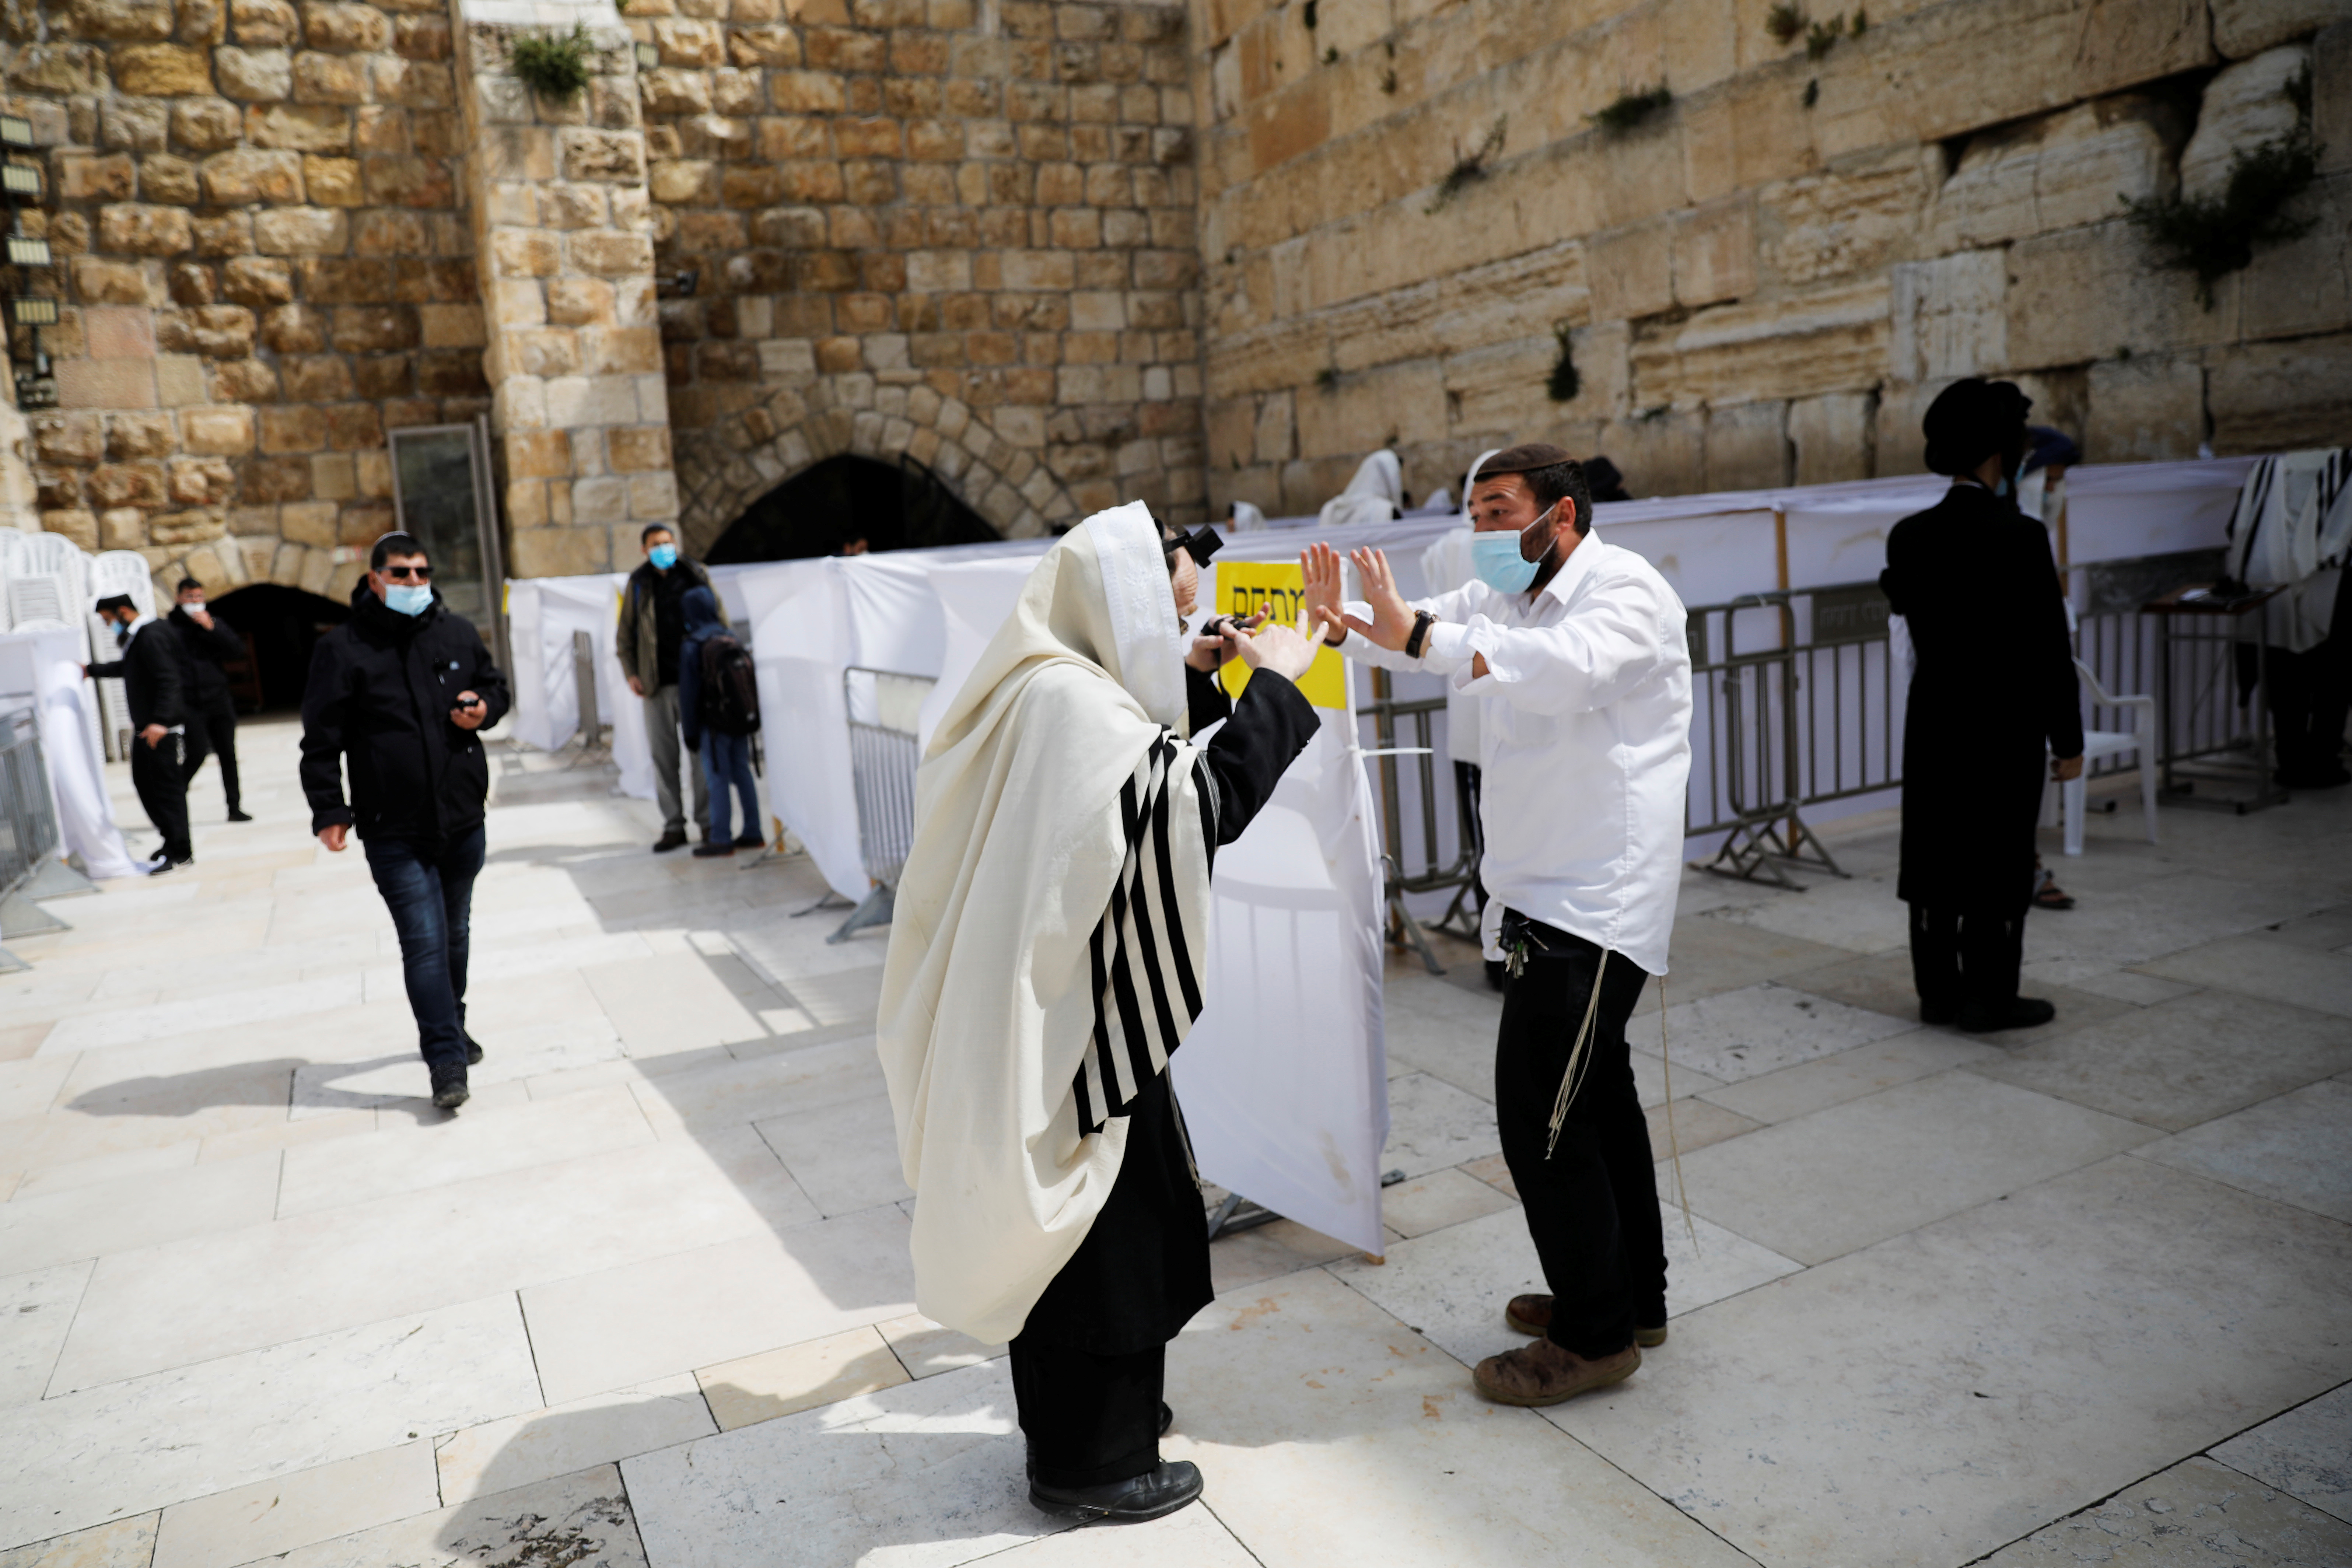 Con mascarillas y distancia, los fieles regresan al Muro de las Lamentaciones de Jerusalén